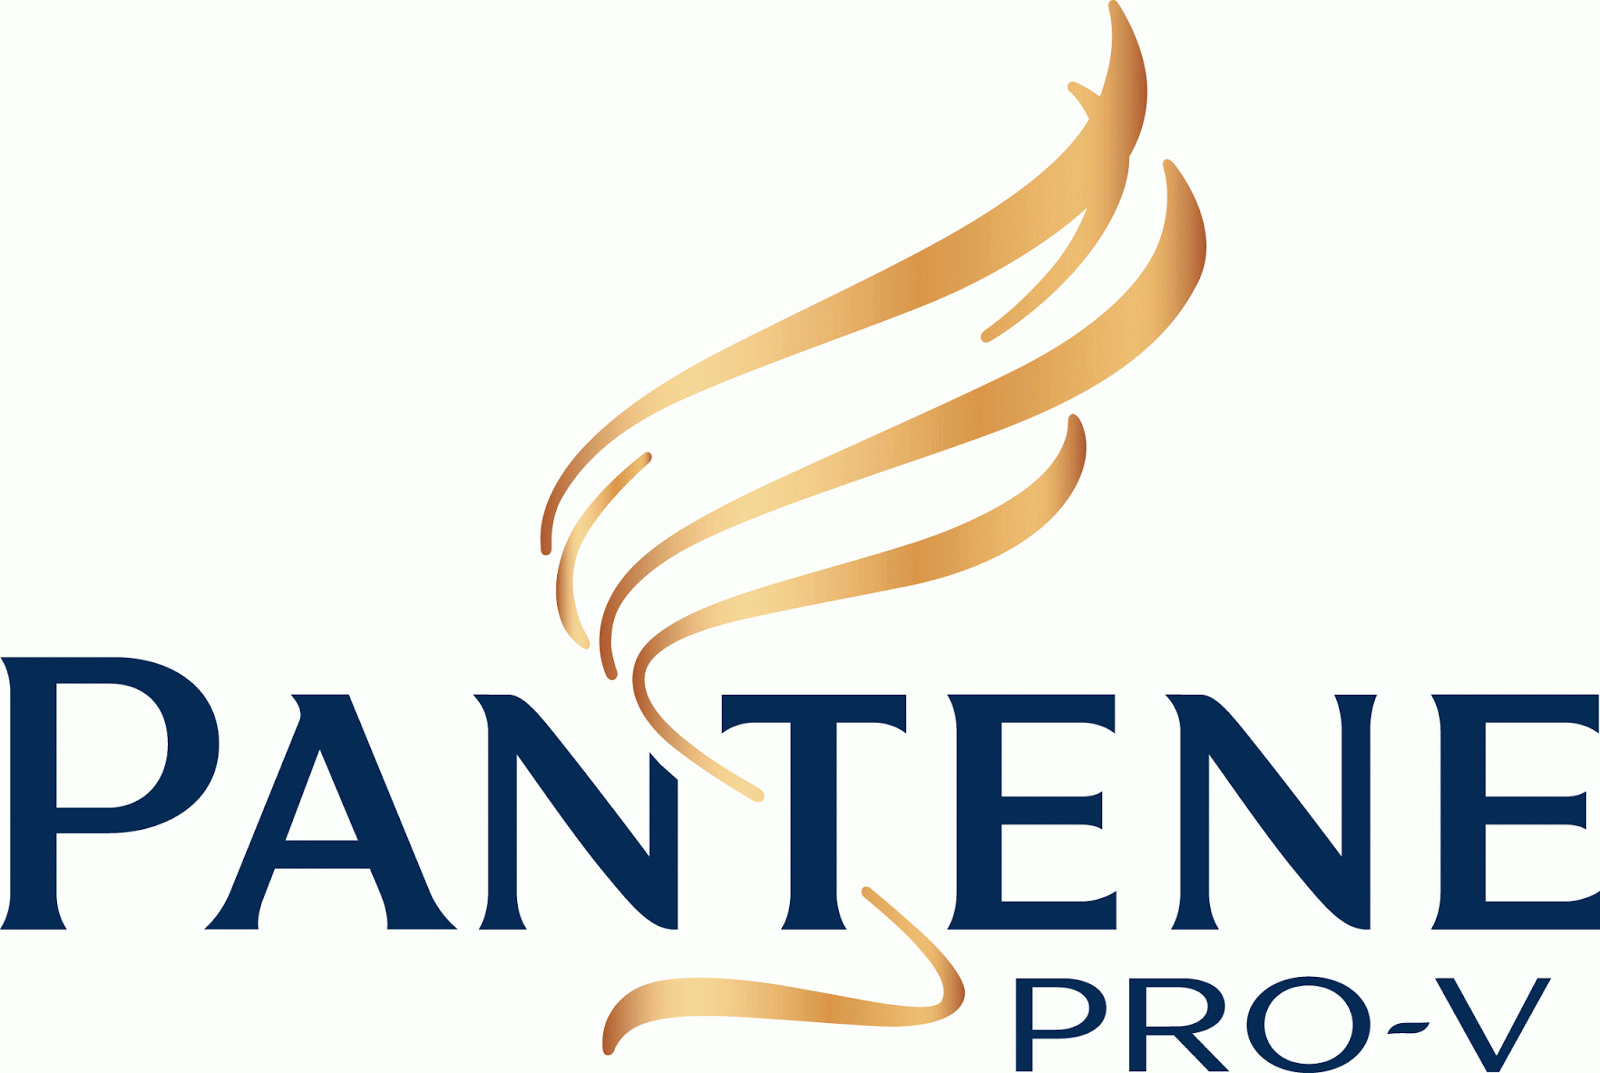 Hair Product Logo - Very Popular Logo: Pantene Logo